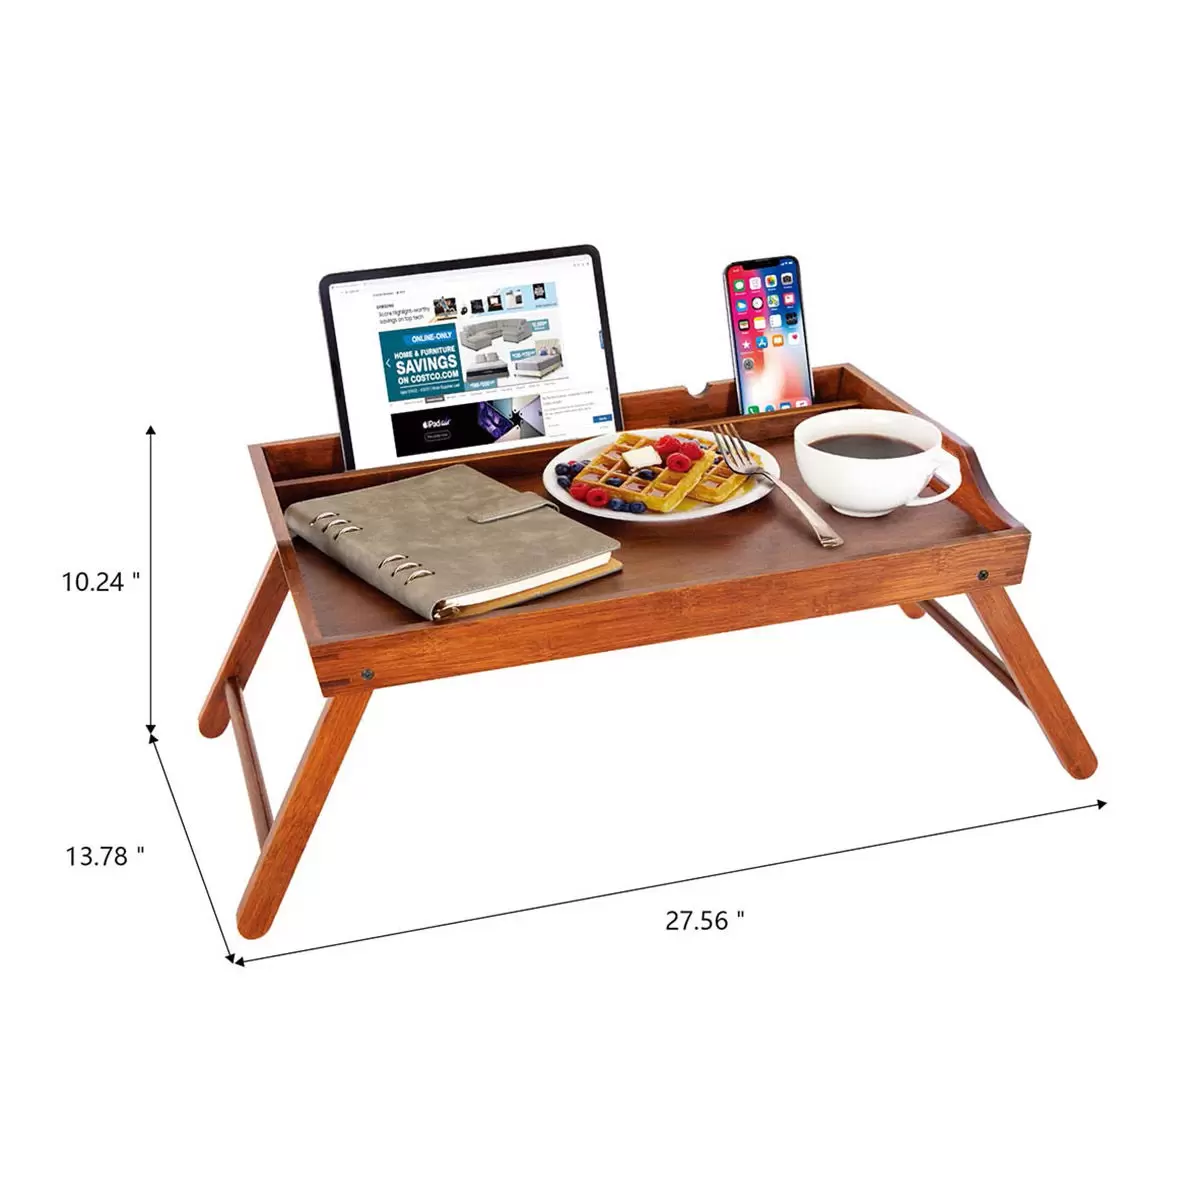 Carrara 多功能摺疊桌/床用桌 深棕色